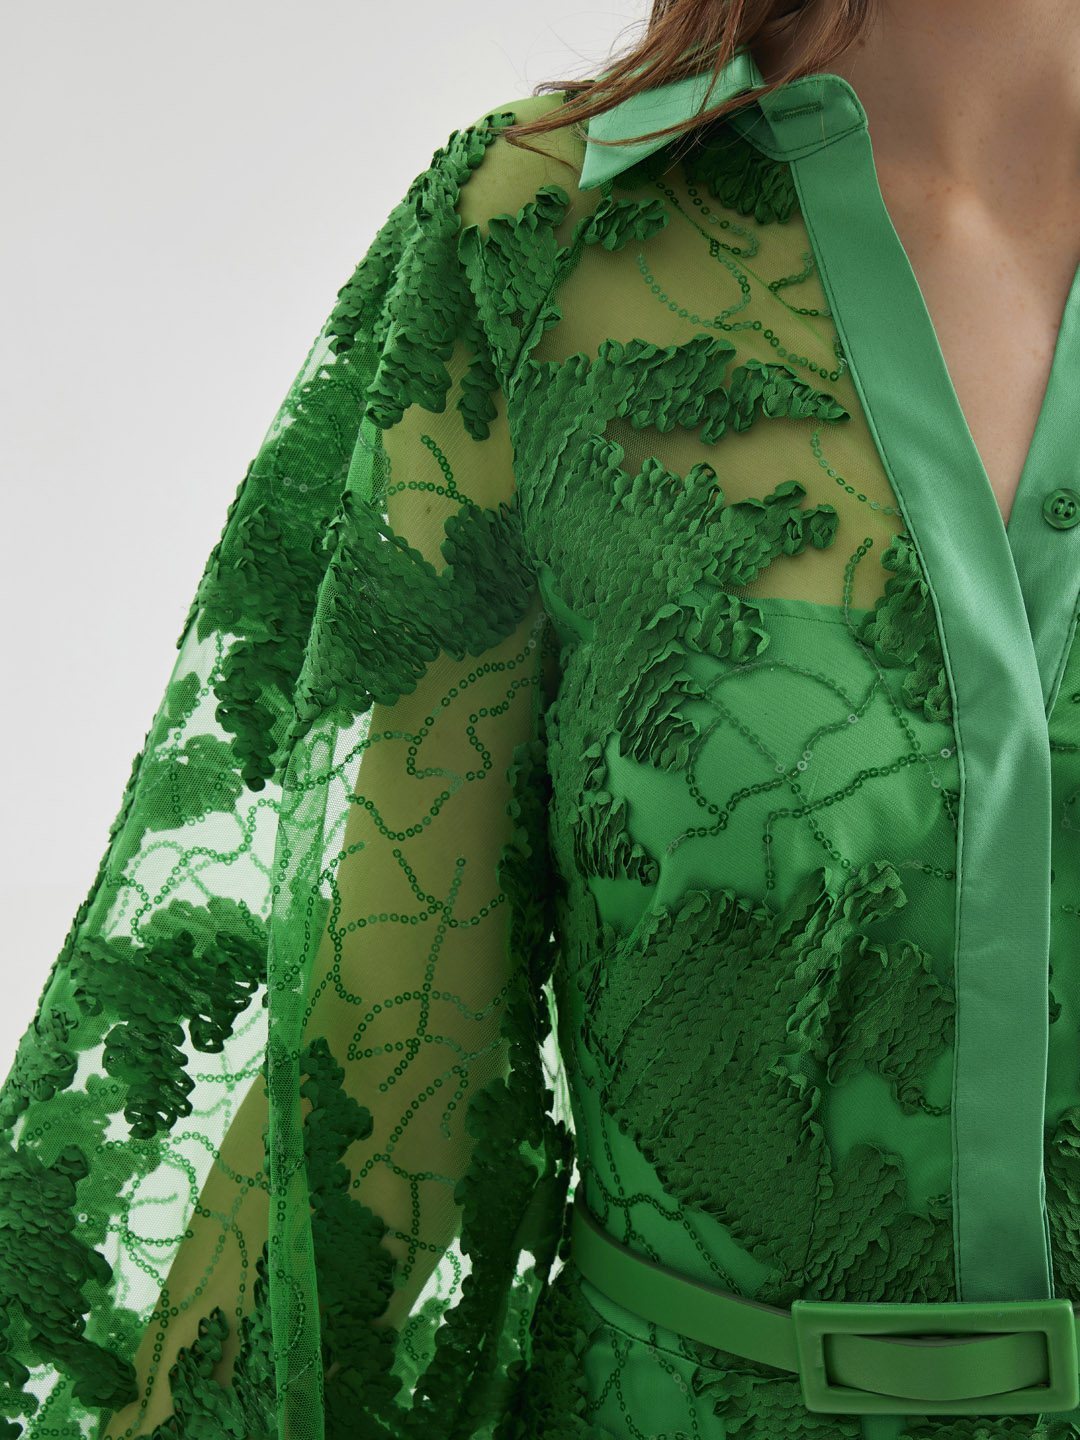 فستان صوفي مطرز بالترتر باللون الأخضر